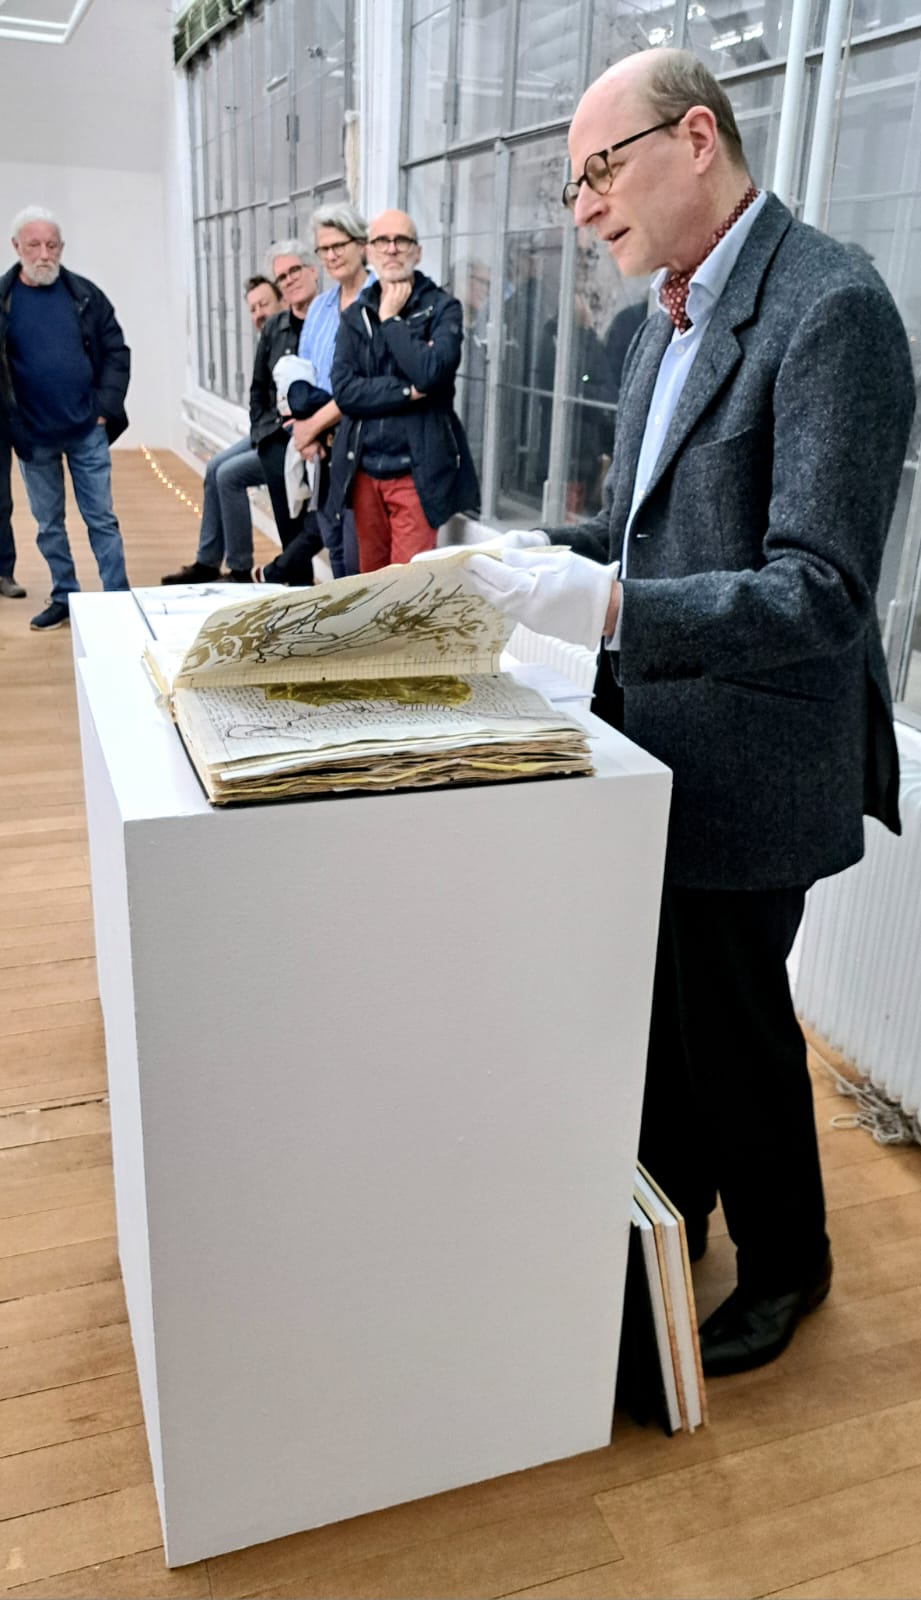 Eröffnung der Ausstellung "Manifold" in der Kunst-Mühle. Fotos: Hendrik Heuser